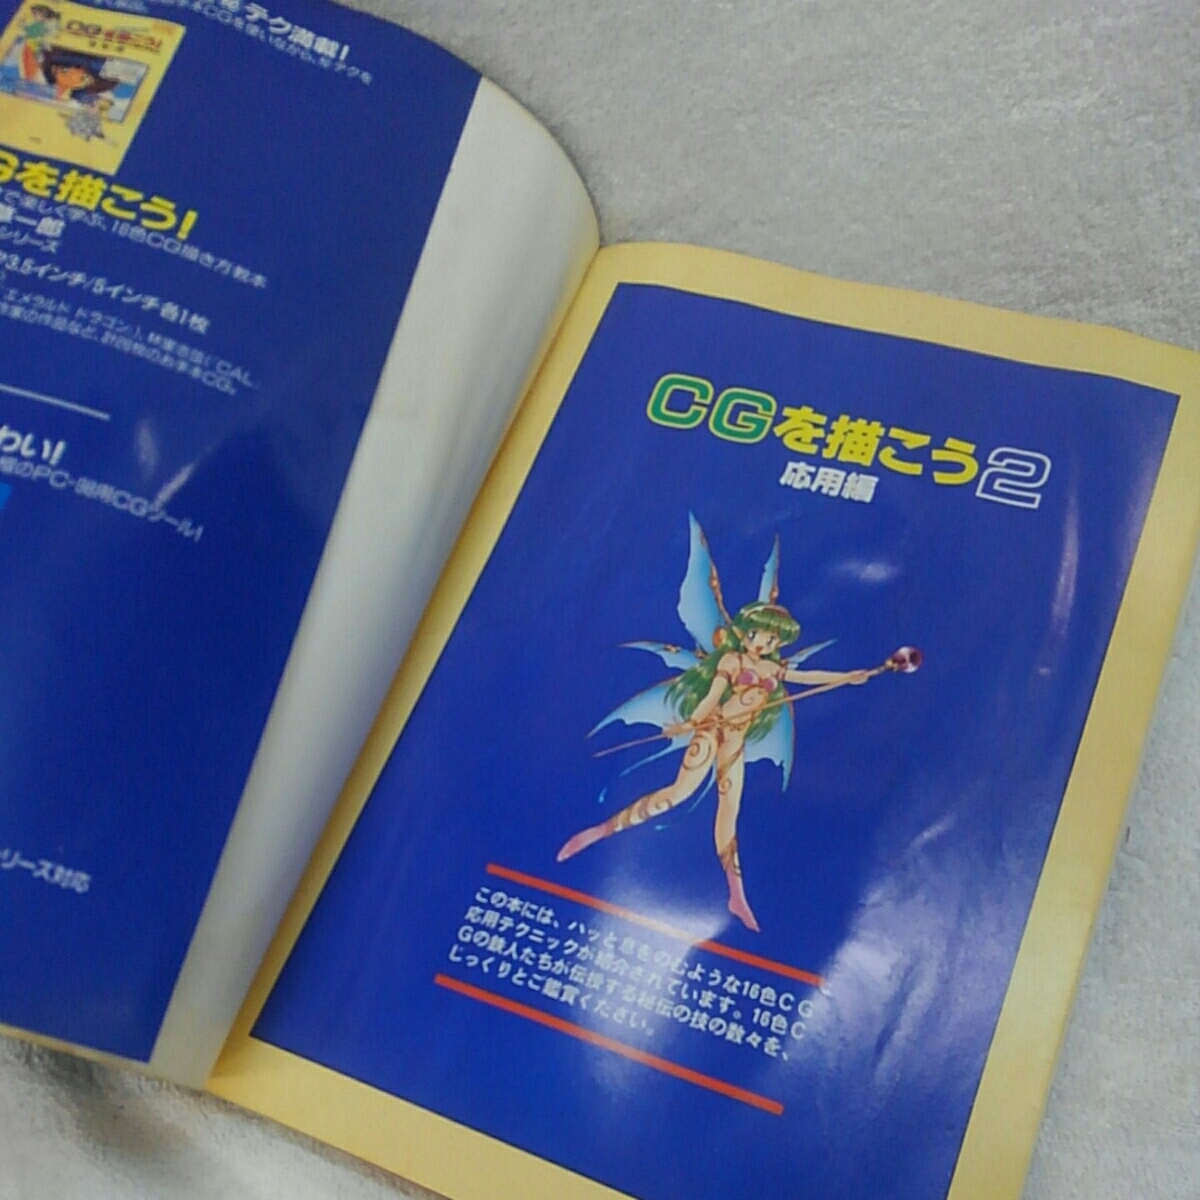 【小学館】POPCOM BOOKS 16色グラフィックス最終奥義 CGを描こう2 応用編 for PC-98シリーズ 古本 中古【19/12 D-1  m】